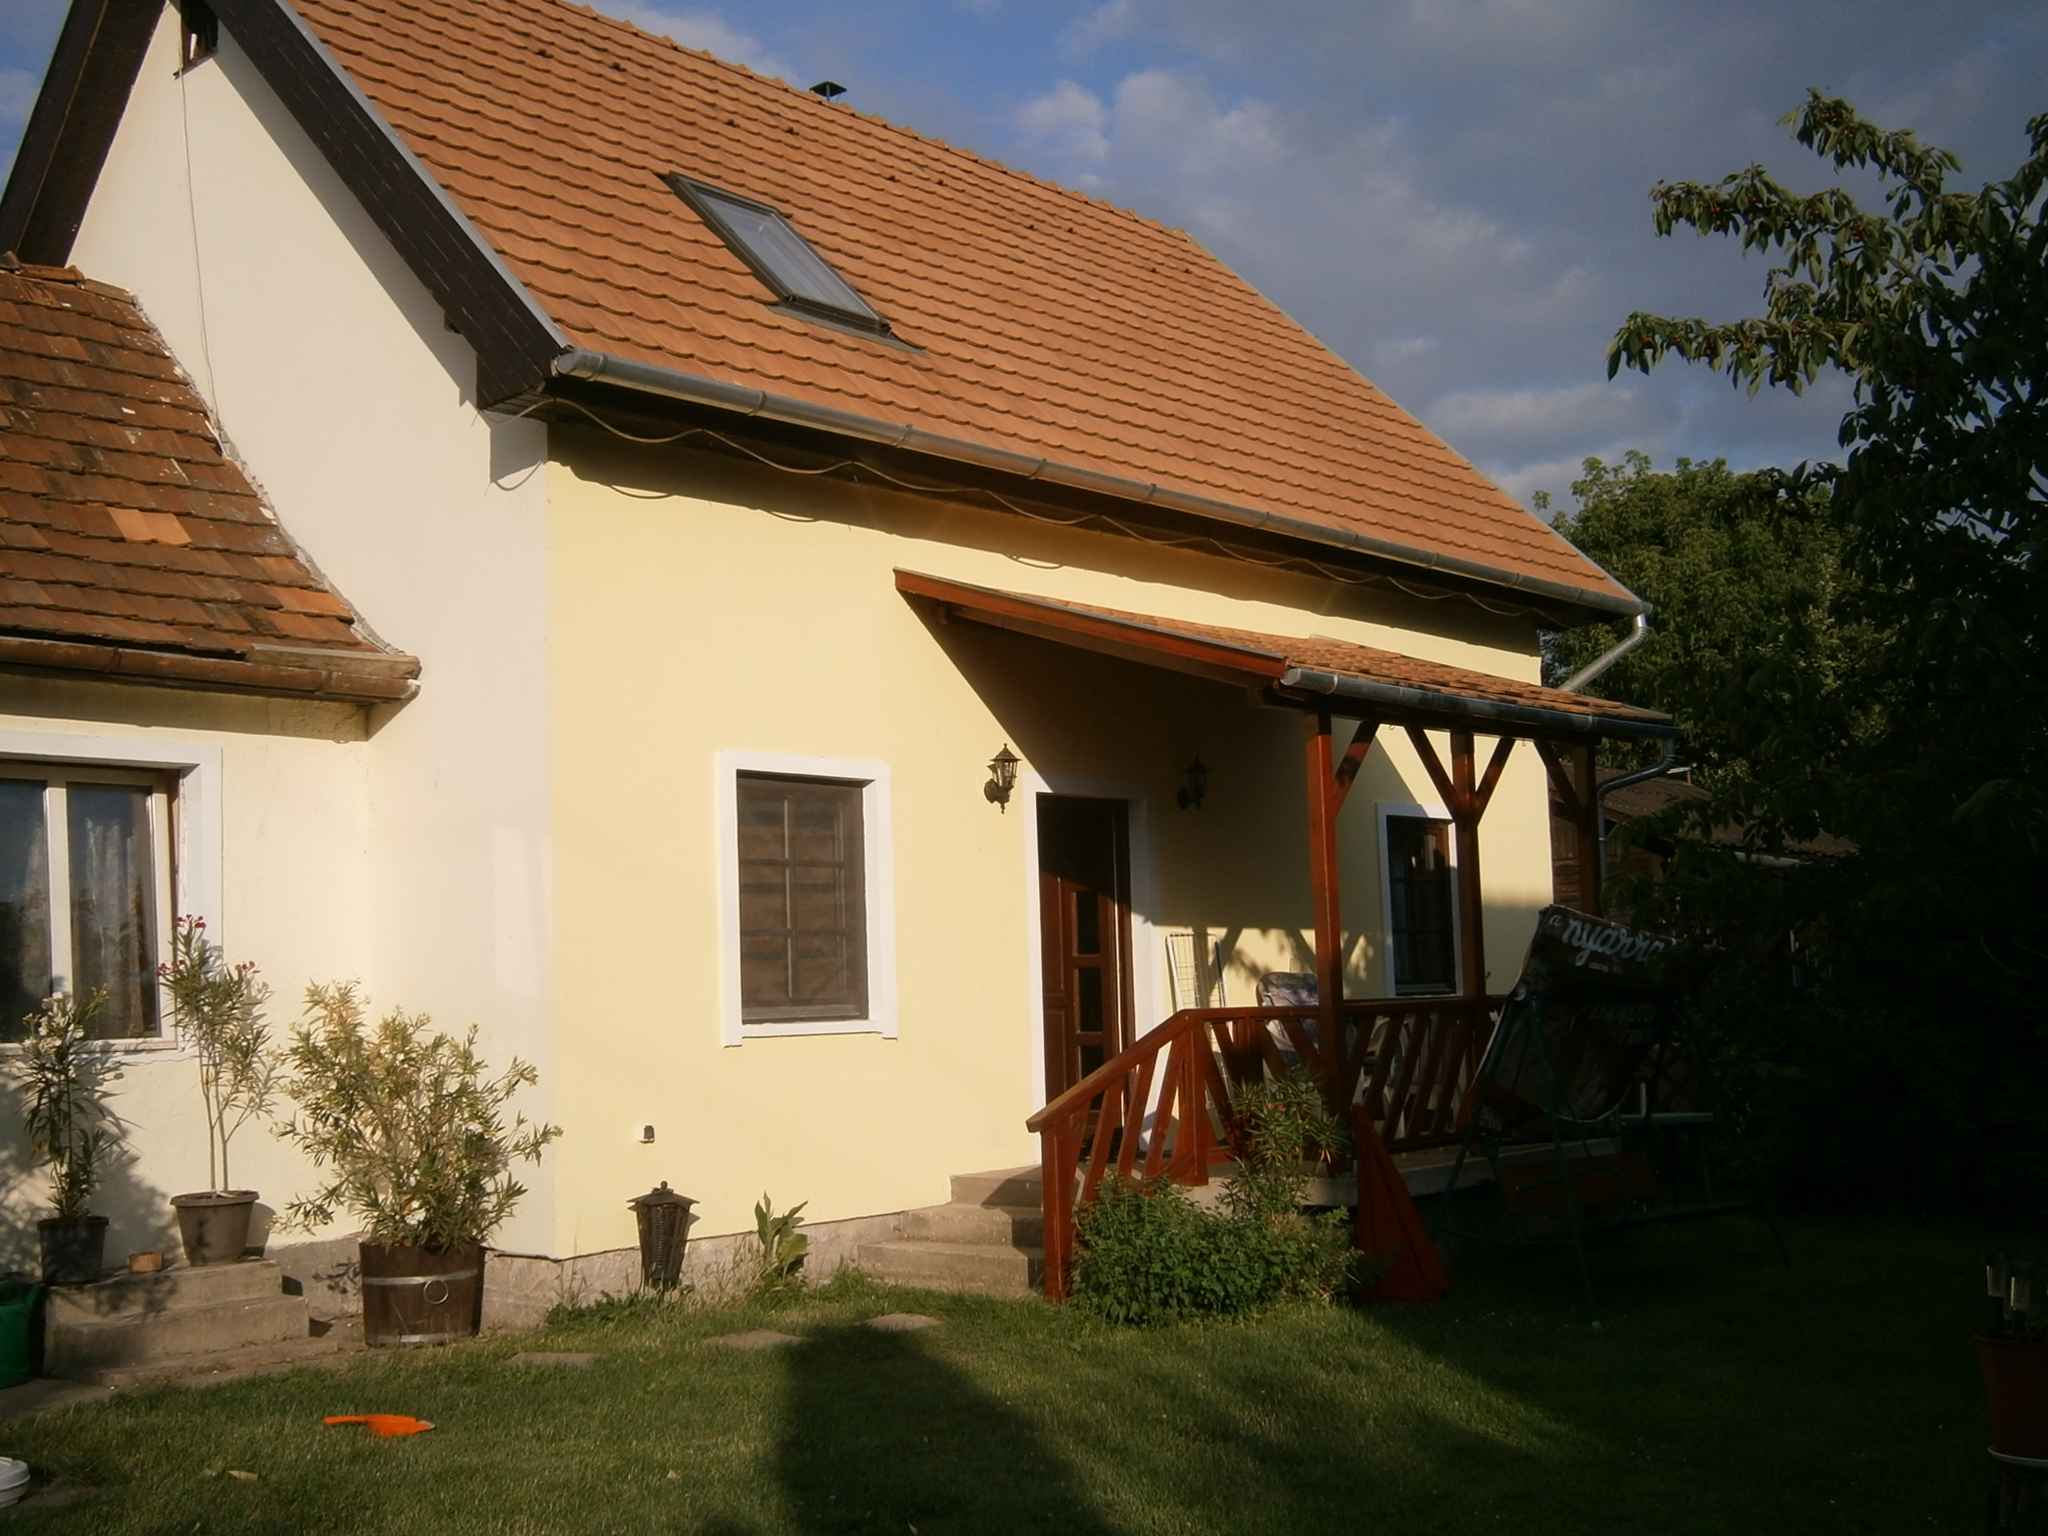 Ferienhaus in der Nähe des Zentrums  in Ungarn